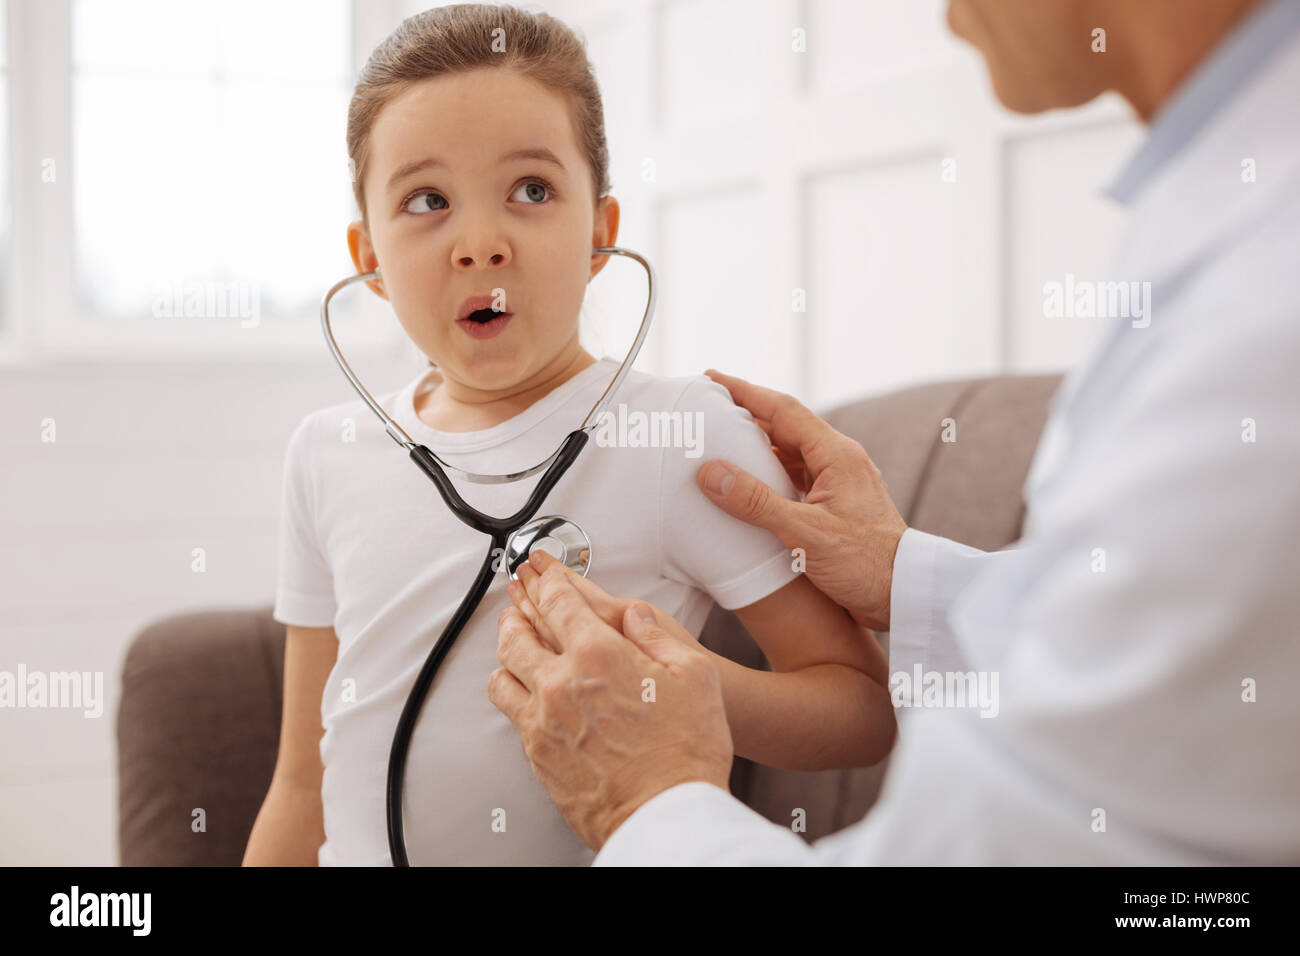 Ich kann es hören. Professionelle schöne aufmerksamen Kinderarzt unterhaltsam sein Patient mit seinem Stethoskop machen das Mädchen ihren Herzschlag hören Stockfoto